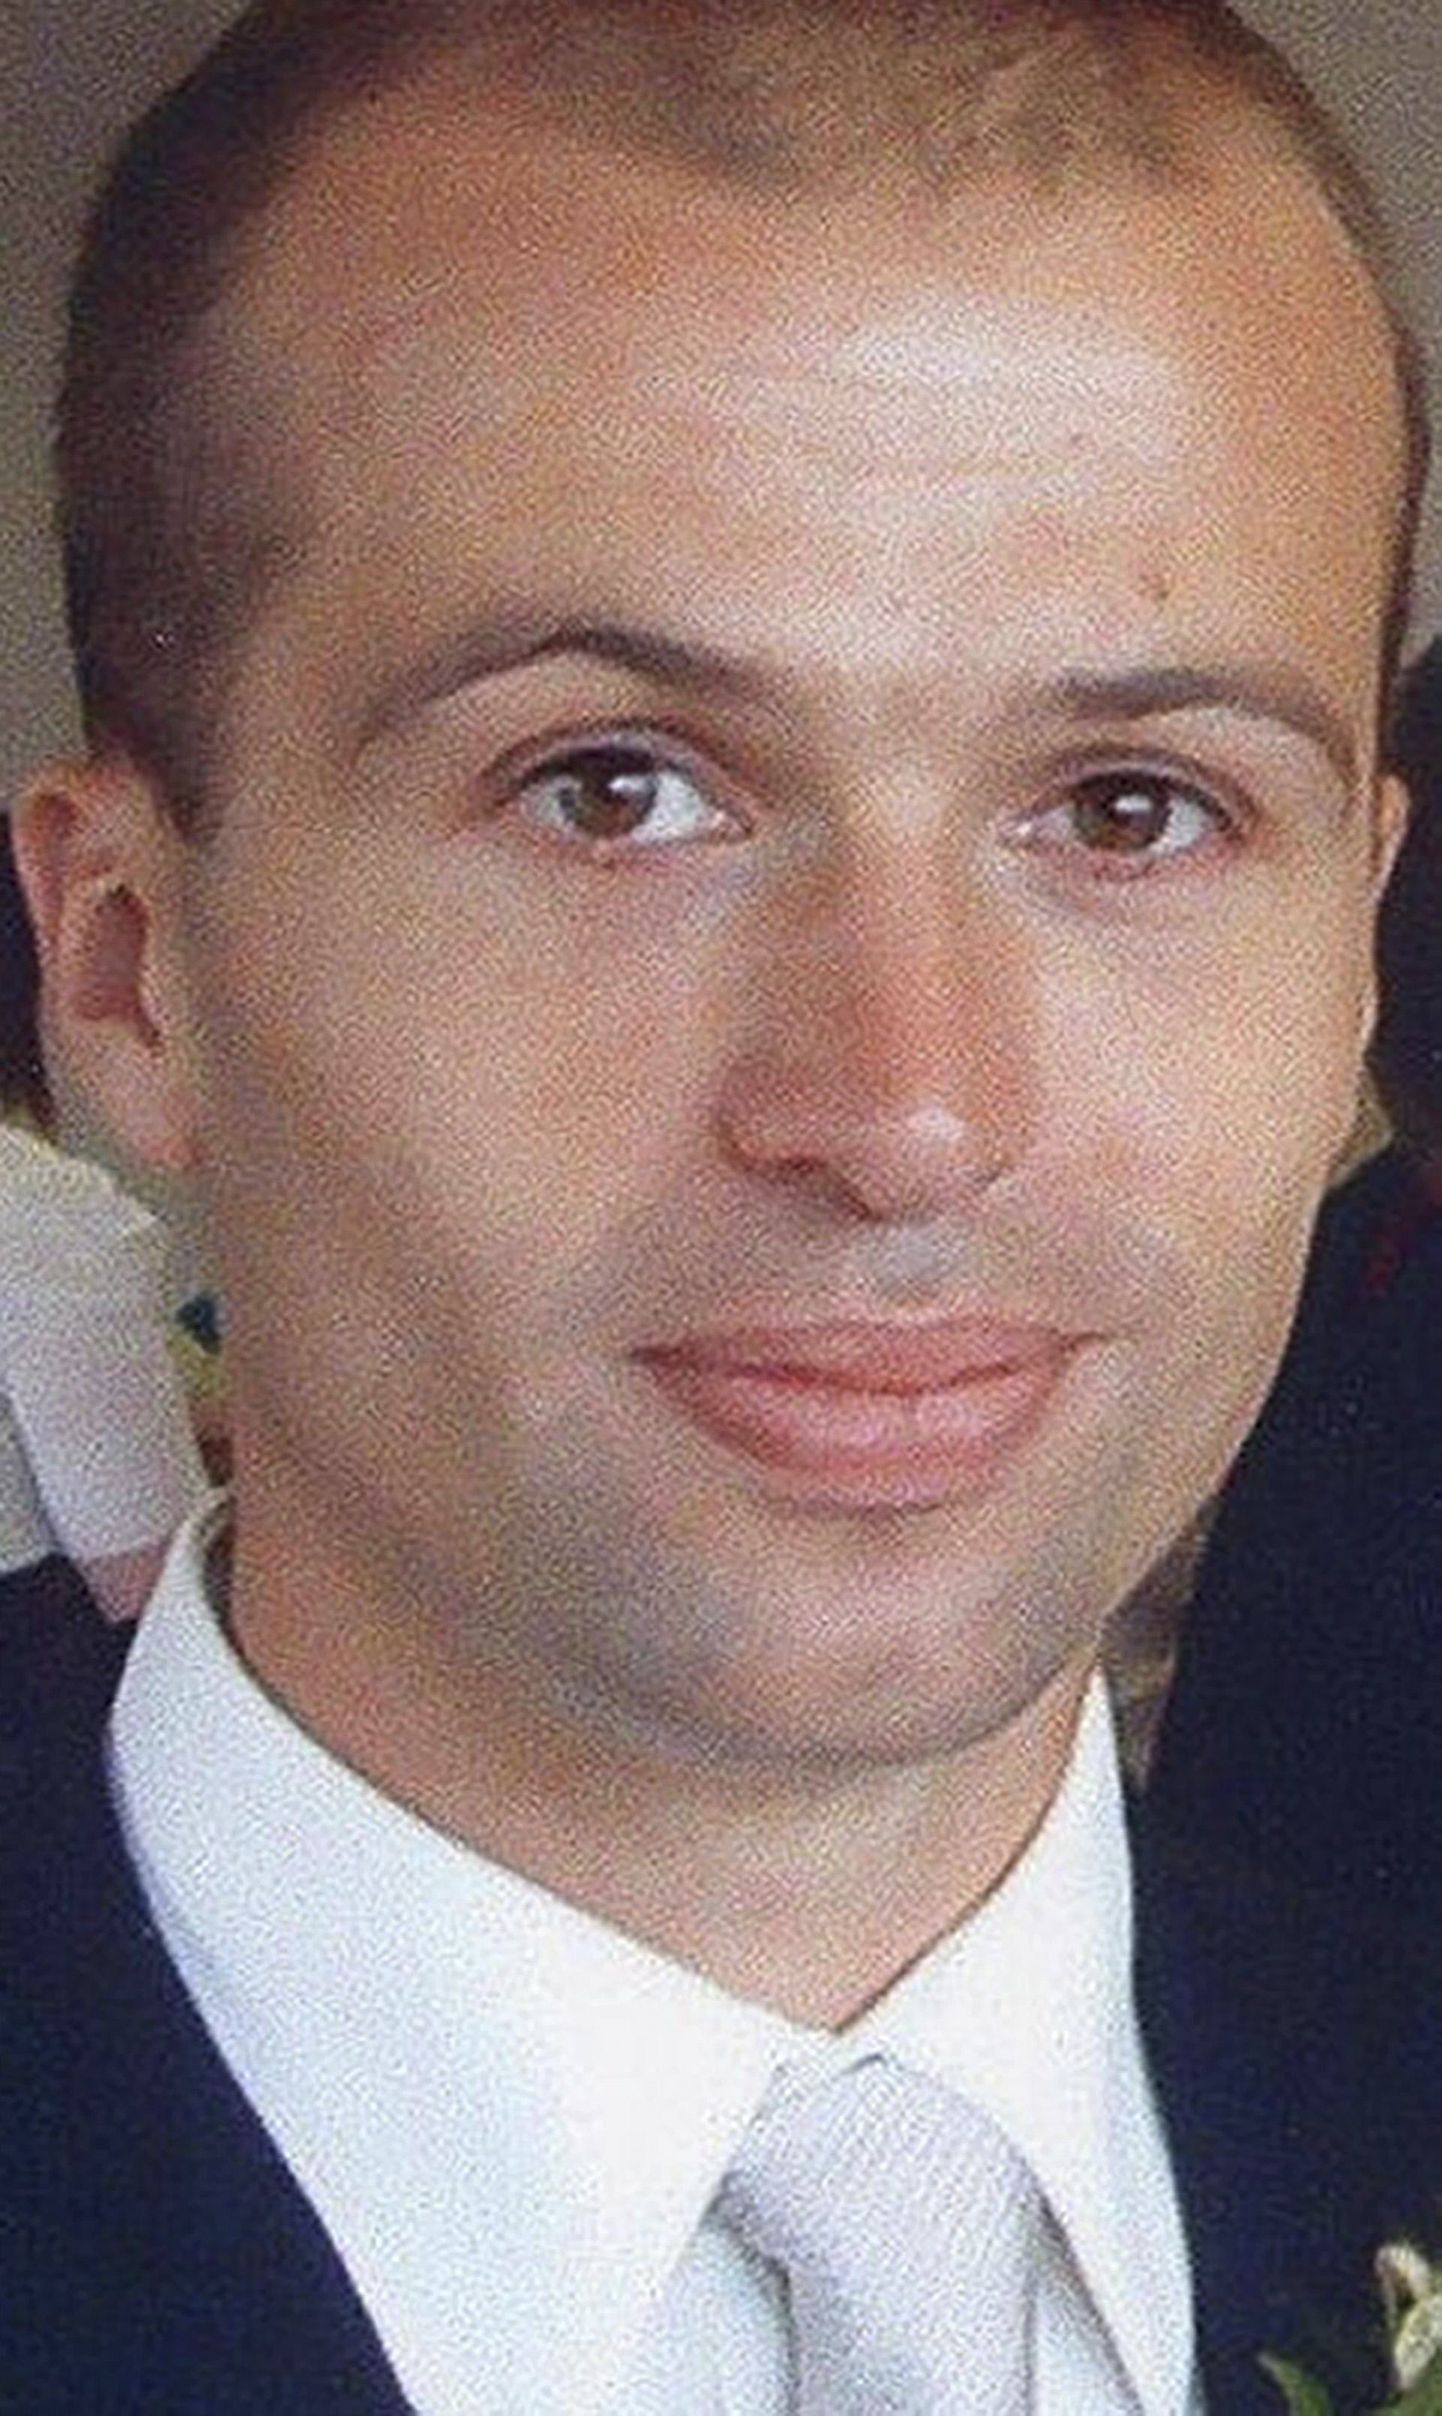 Briti välisluure koodimurdja 31-aastane Gareth Williams leiti 2010. aasta augustis ta korterist surnuna. Mees oli alasti ja lukustatud reisikotti.